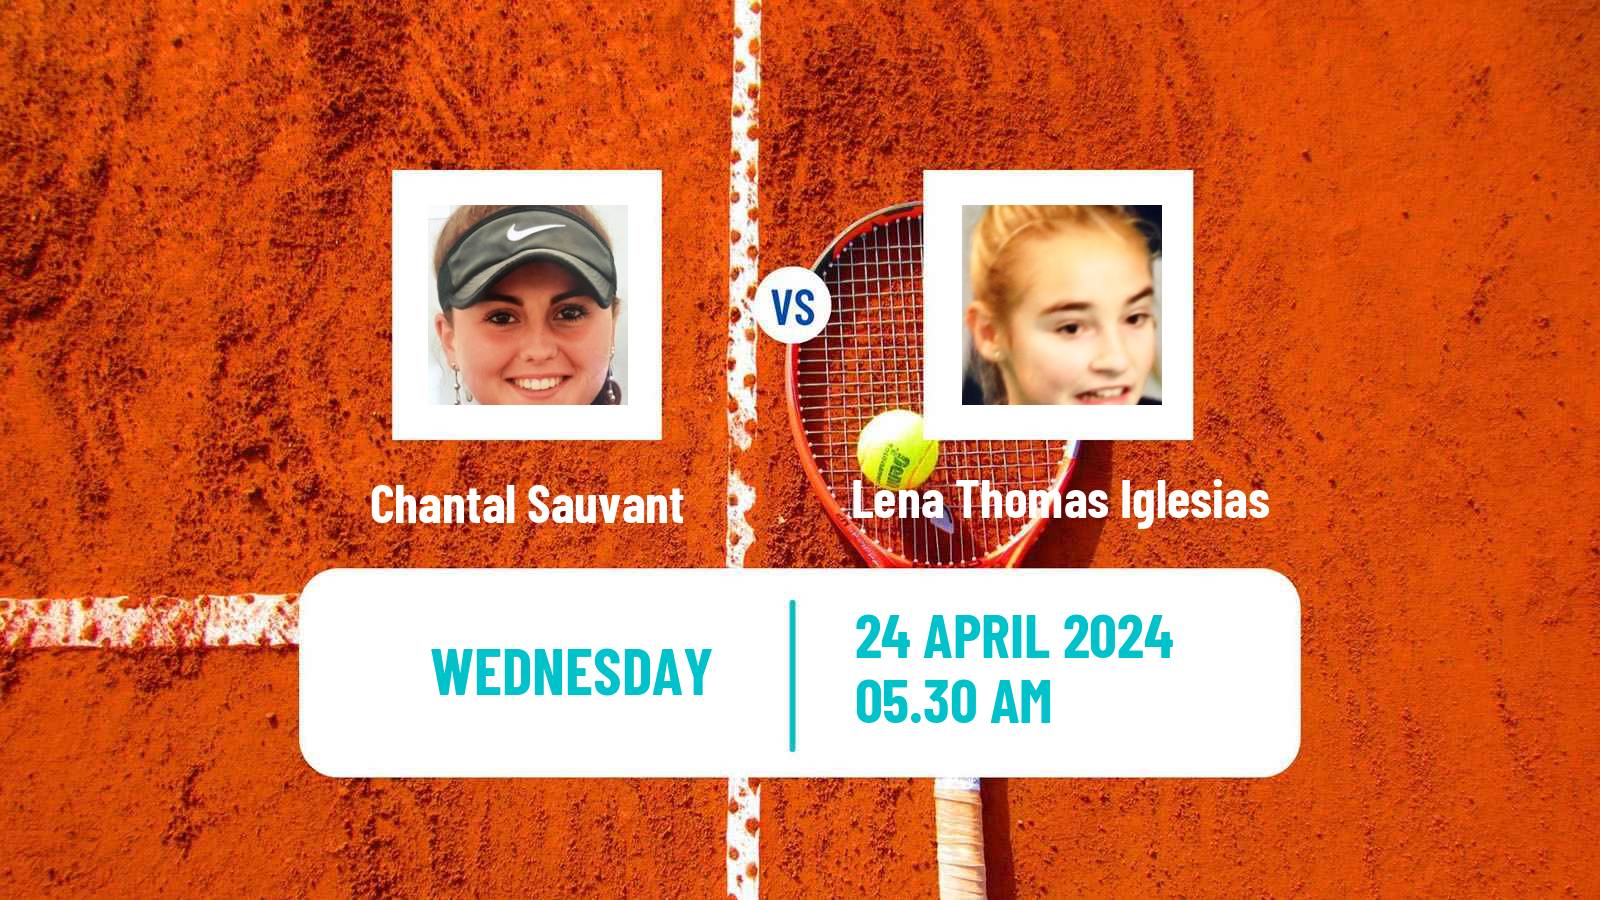 Tennis ITF W15 Antalya 11 Women Chantal Sauvant - Lena Thomas Iglesias